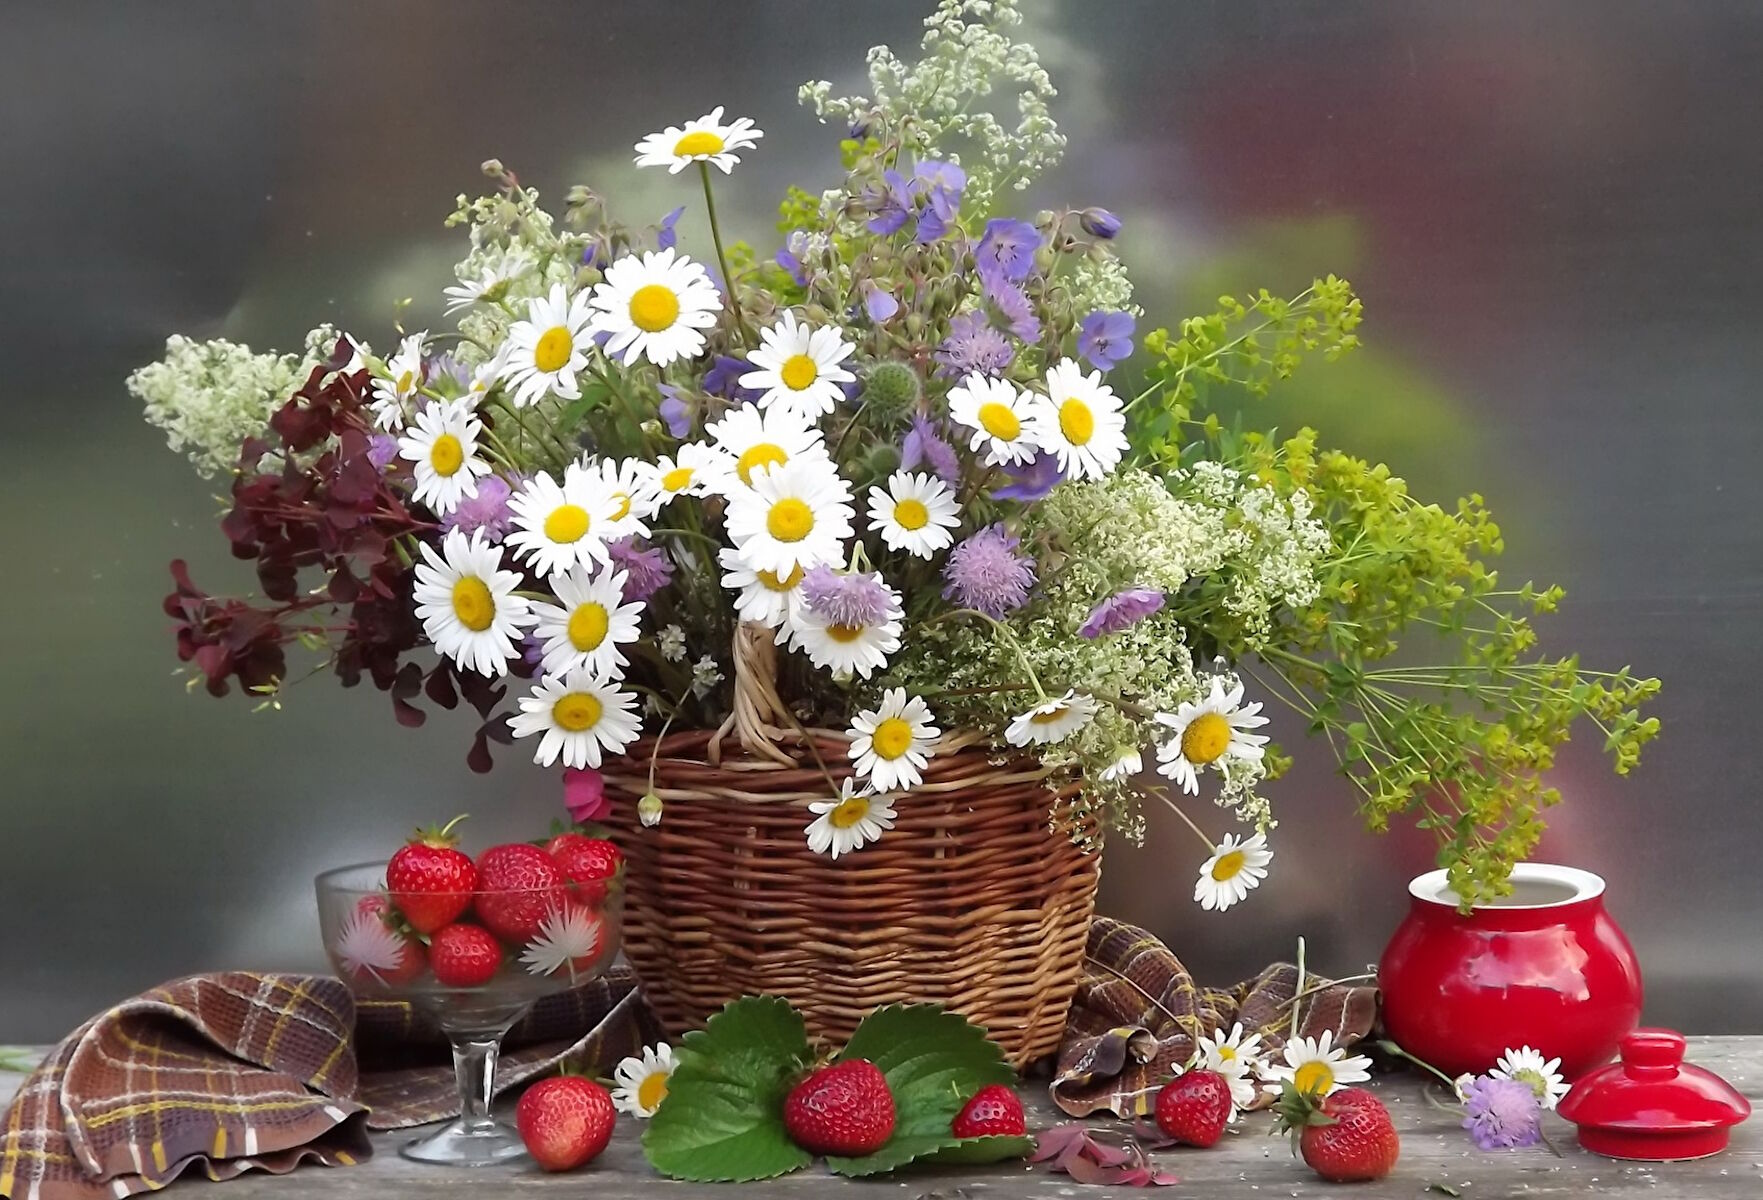 Хорошего дня последних дней лета. Букет полевых цветов. Красивый летний букет. Красивый букет полевых цветов. Полевые цветы в корзинке.